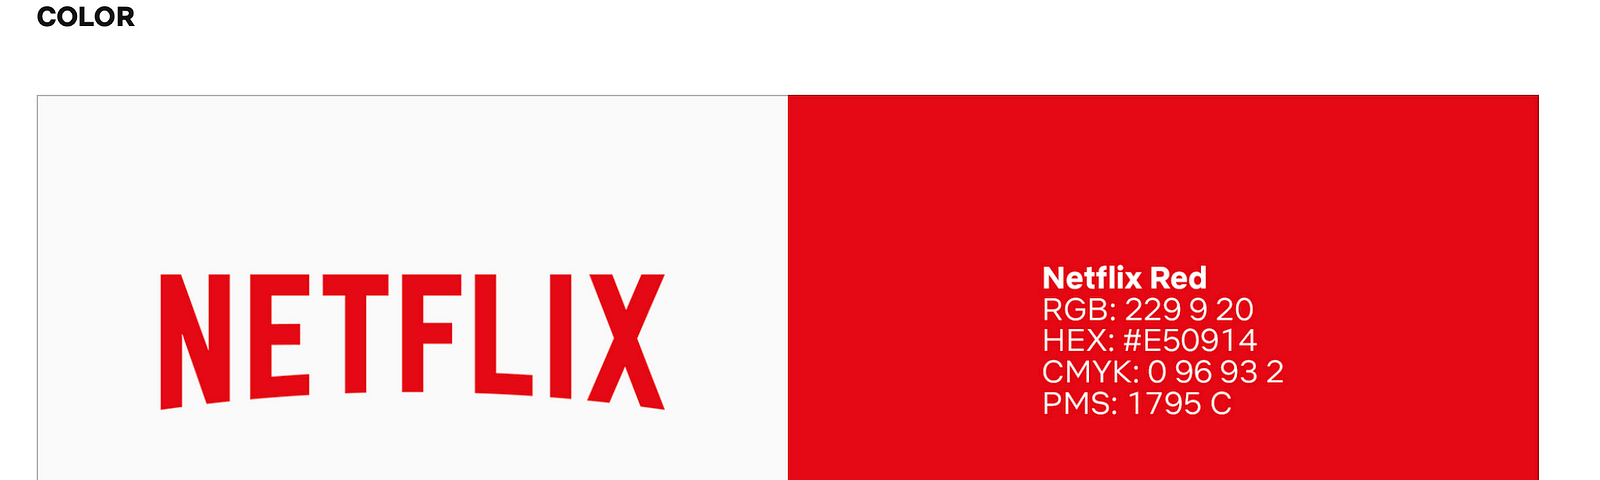 Netflix tech startup logo